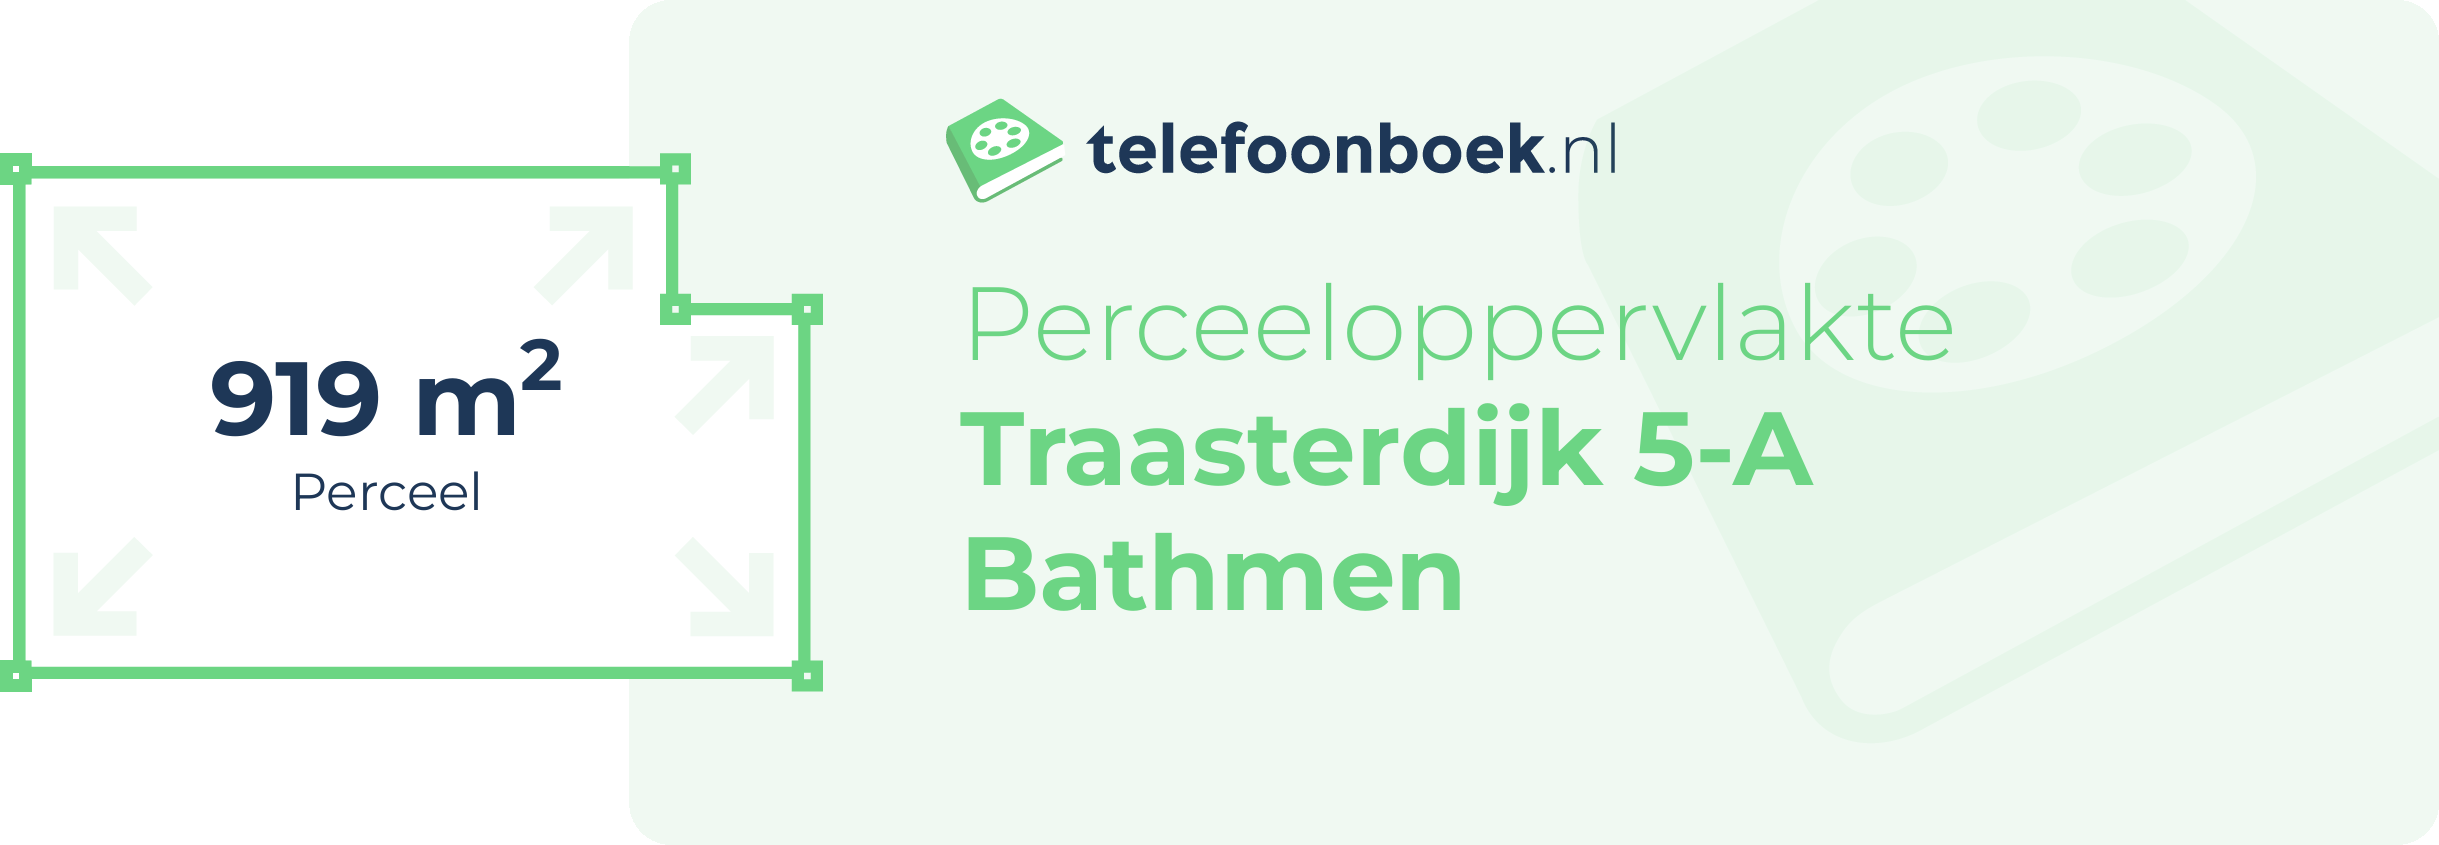 Perceeloppervlakte Traasterdijk 5-A Bathmen